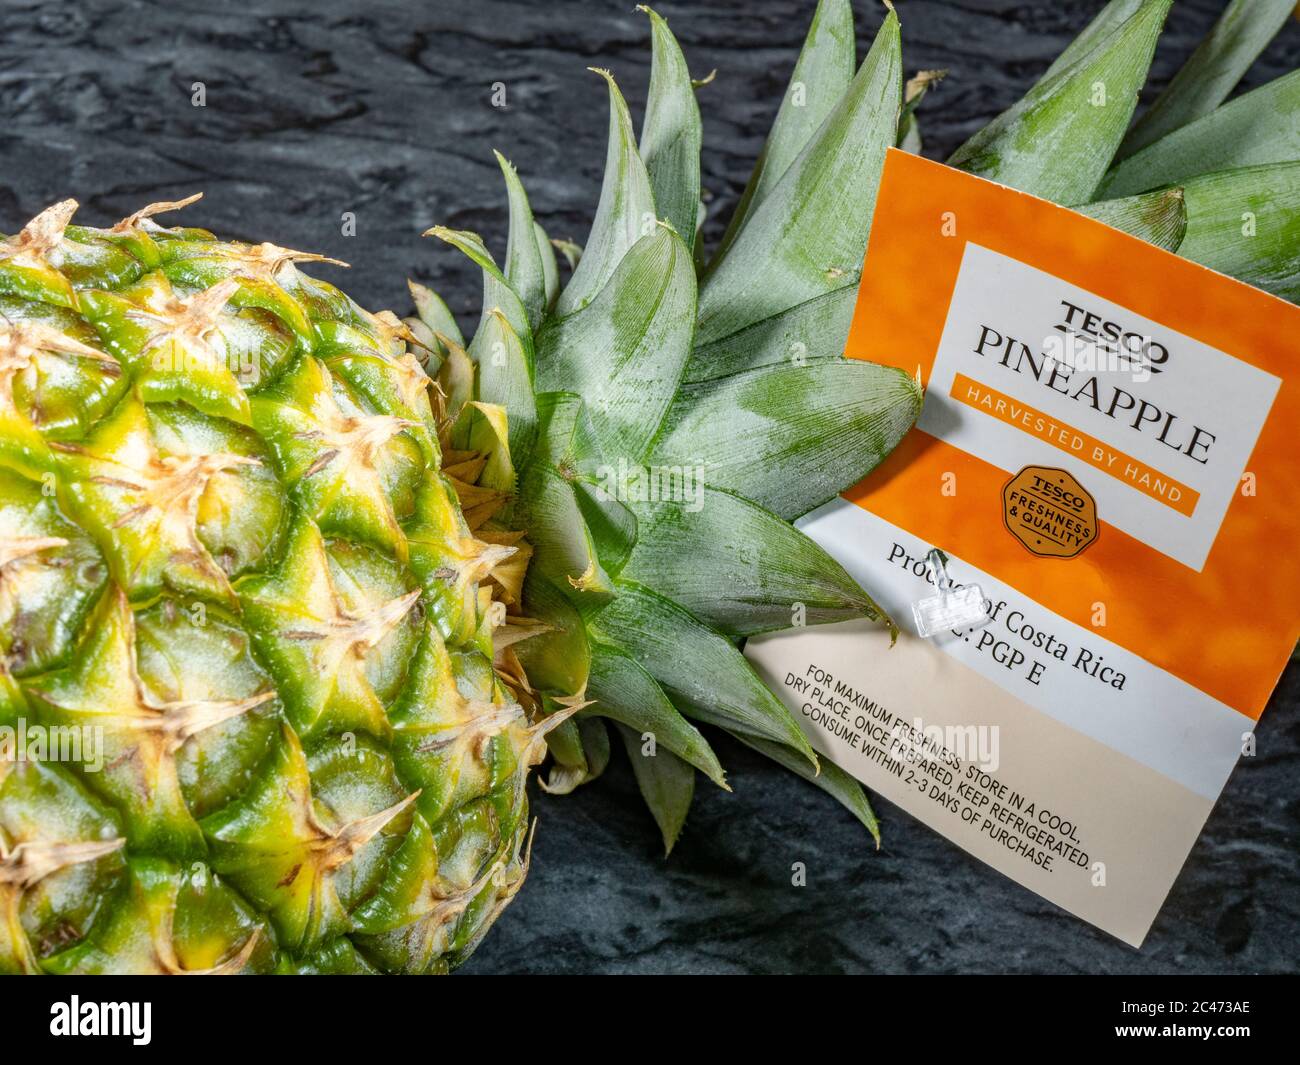 Gros plan d’un ananas frais du supermarché Tesco portant l’étiquette de marque et les informations «récoltées à la main» et «produit du Costa Rica». Banque D'Images